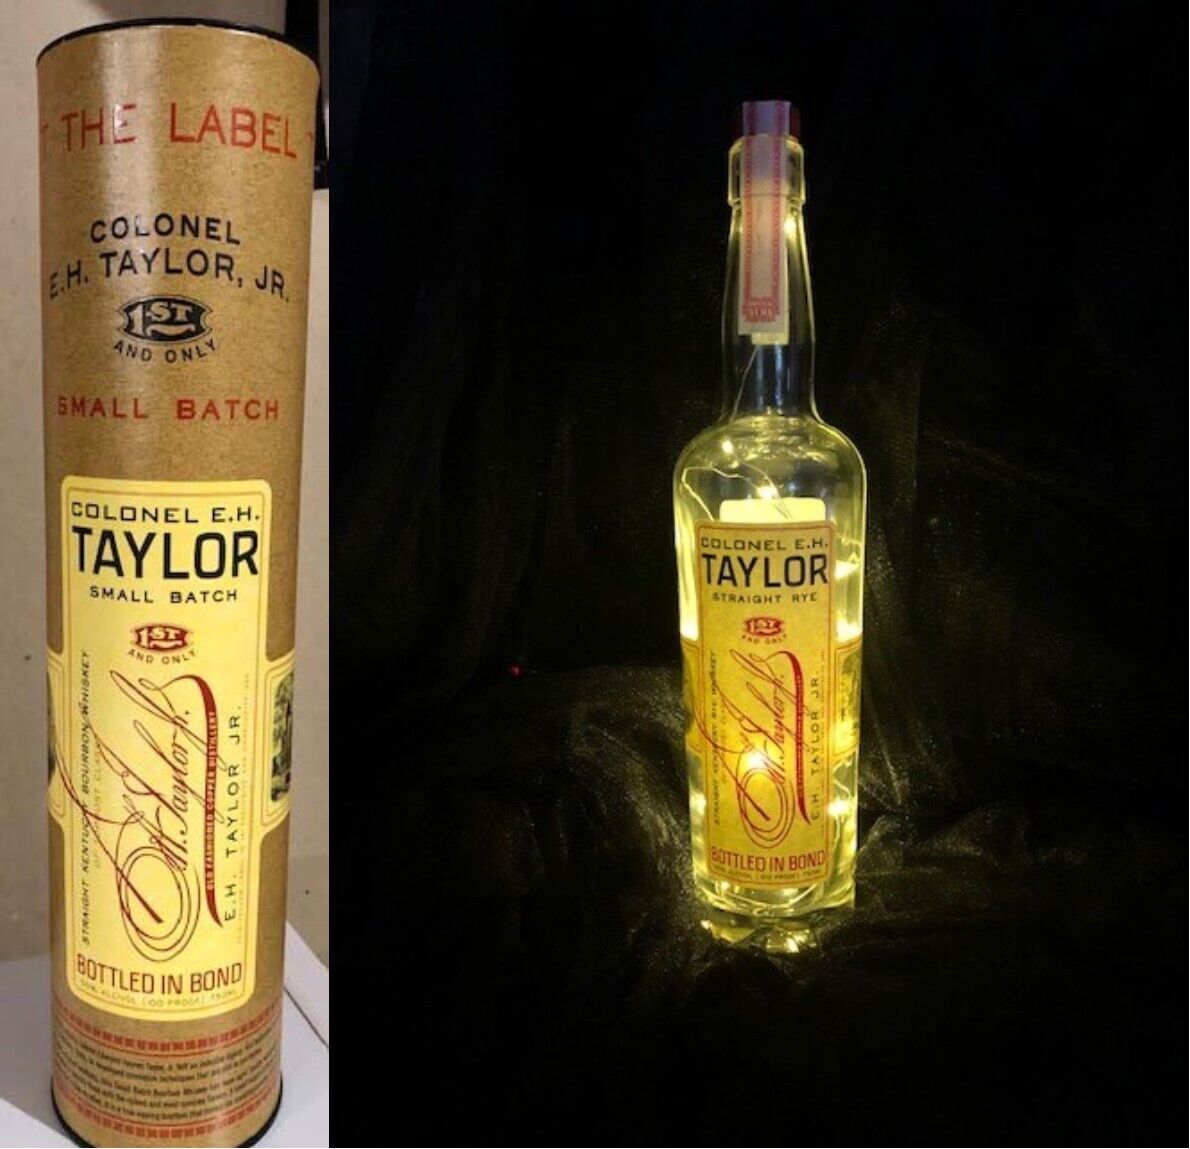 EH Taylor Bottle Lamp, Bar Light, Home Bar Lamp, Bourbon Bottle Lamp